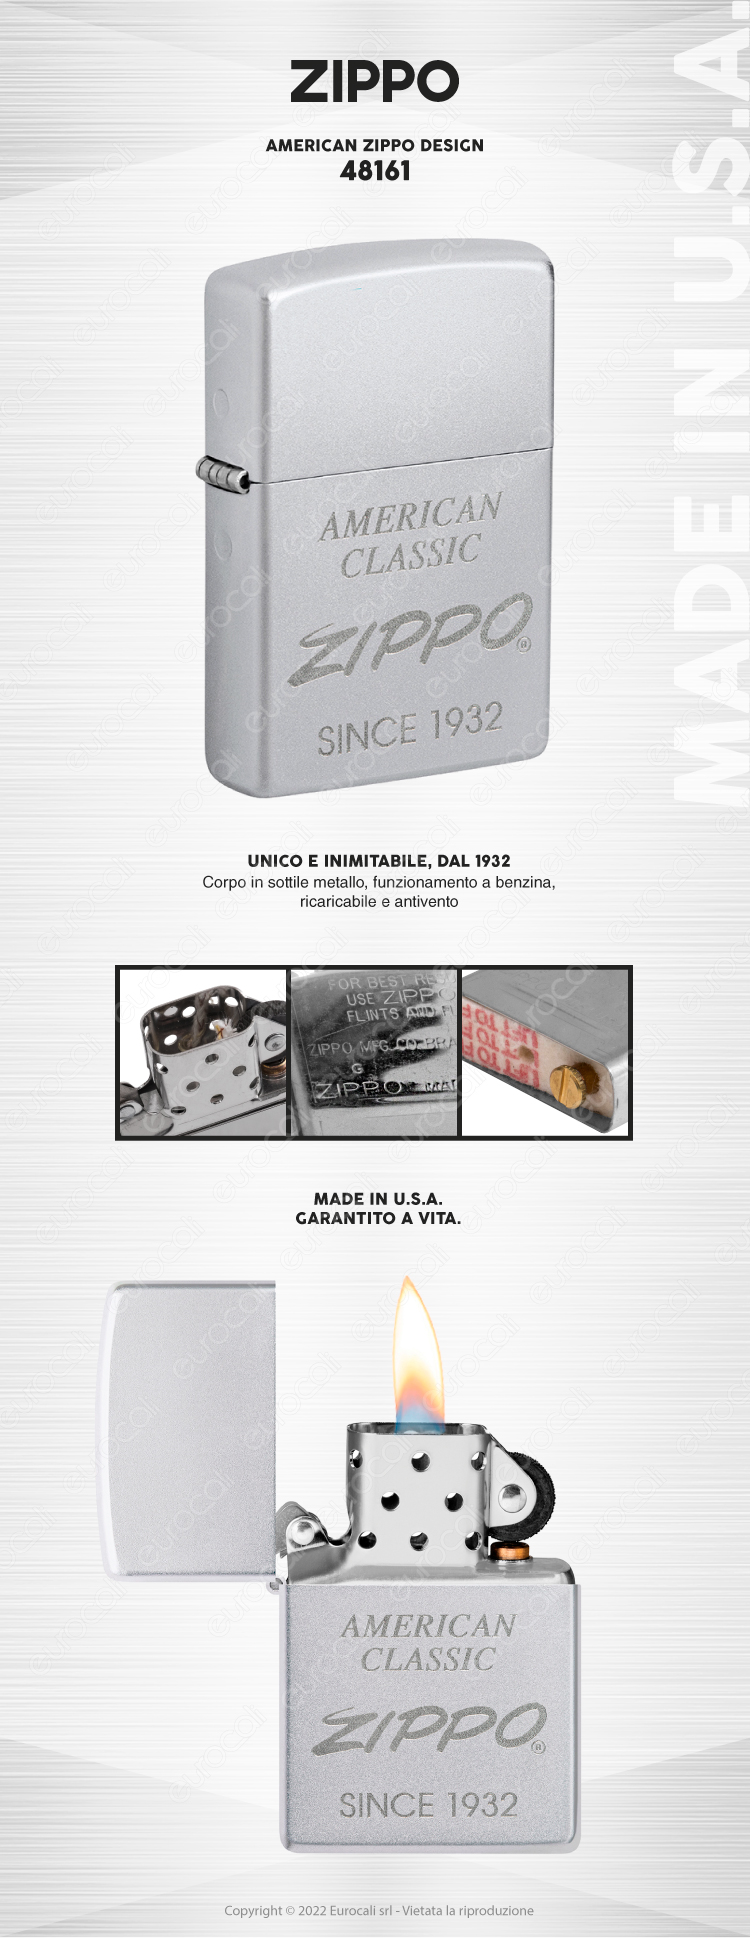 zippo mod. 48161 american zippo design accendino a benzina ricaricabile antivento